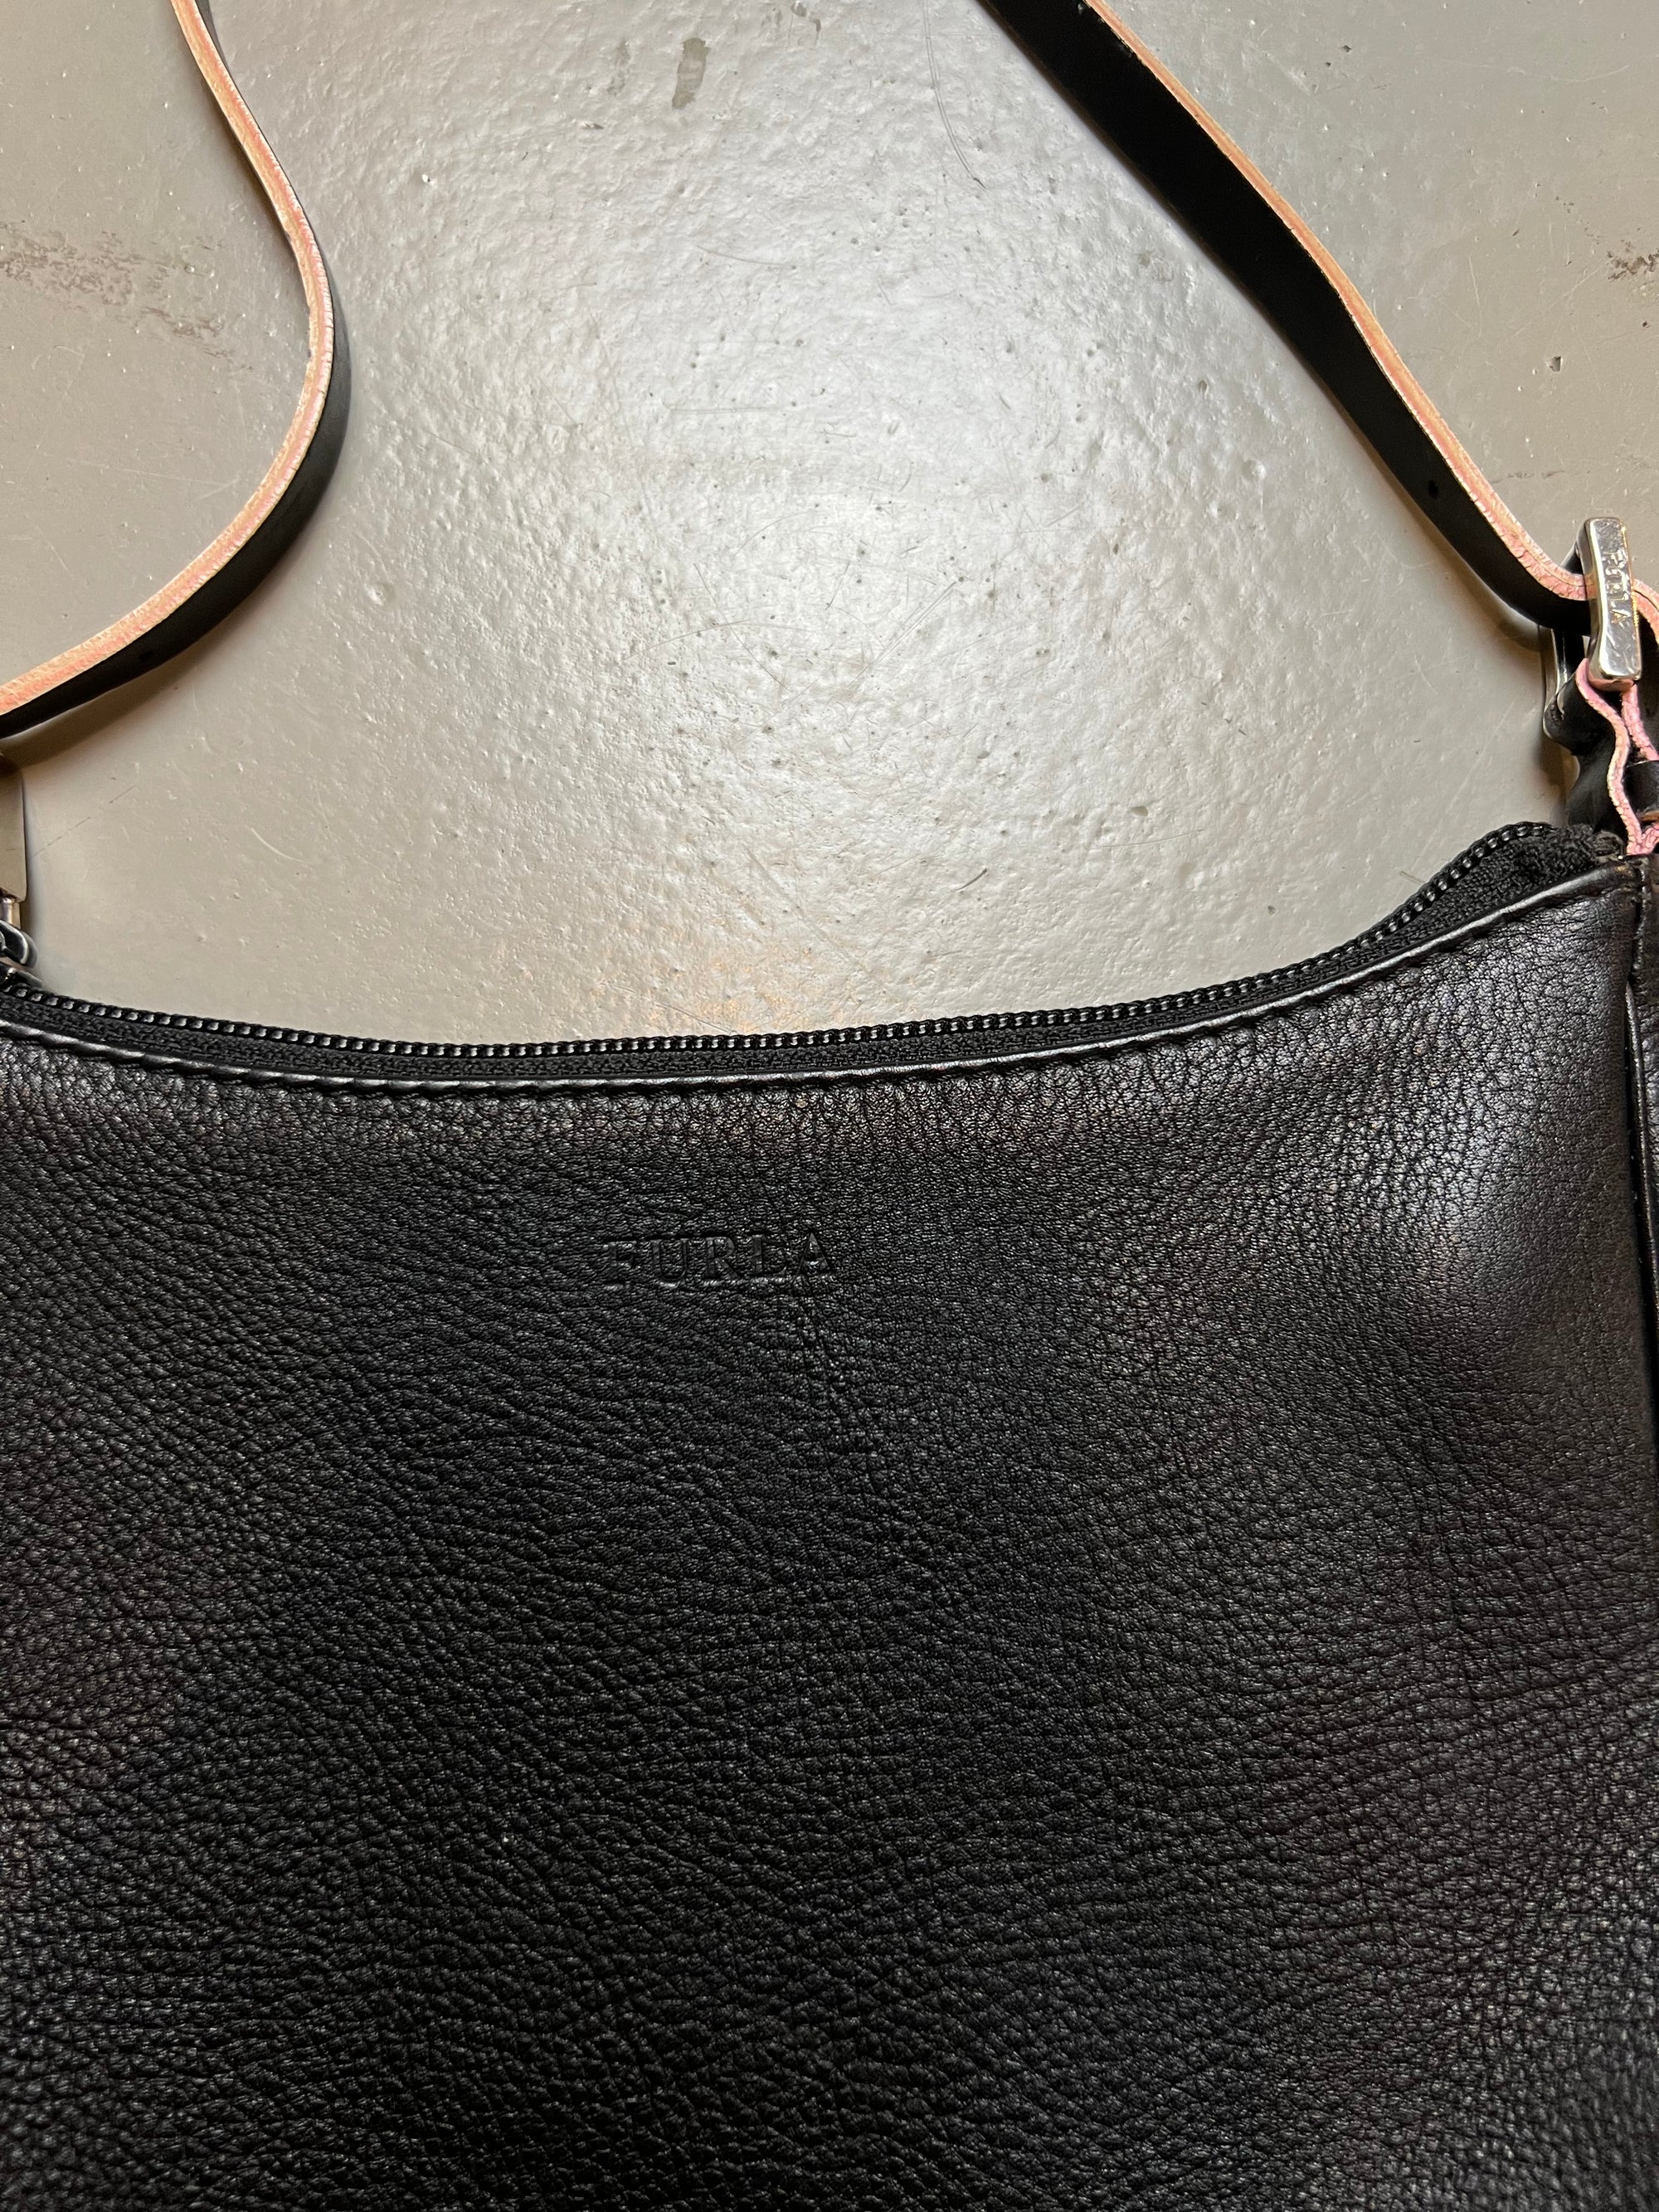 Produkt Bild Vintage Furla Shoulder Bag Black Detail Logo